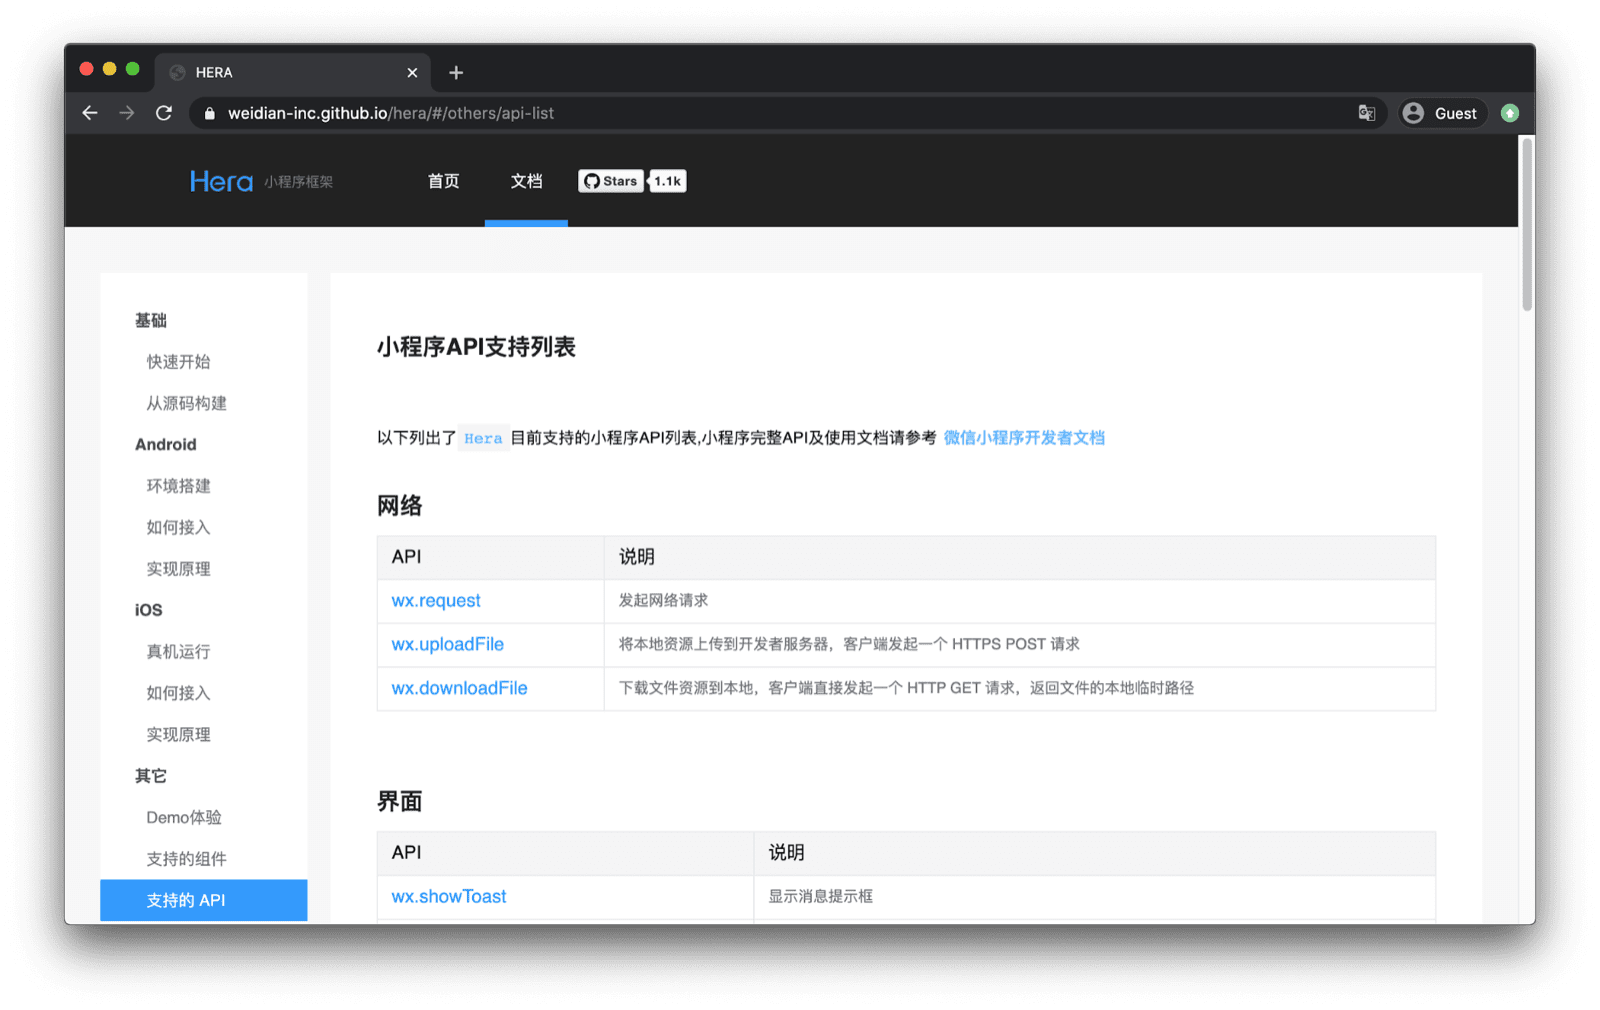 وثائق لإطار عمل تطبيق Hera المصغّر الذي يسرد واجهات برمجة تطبيقات WeChat التي يتوافق معها، مثل `wx.request` و`wx.uploadFile` وما إلى ذلك